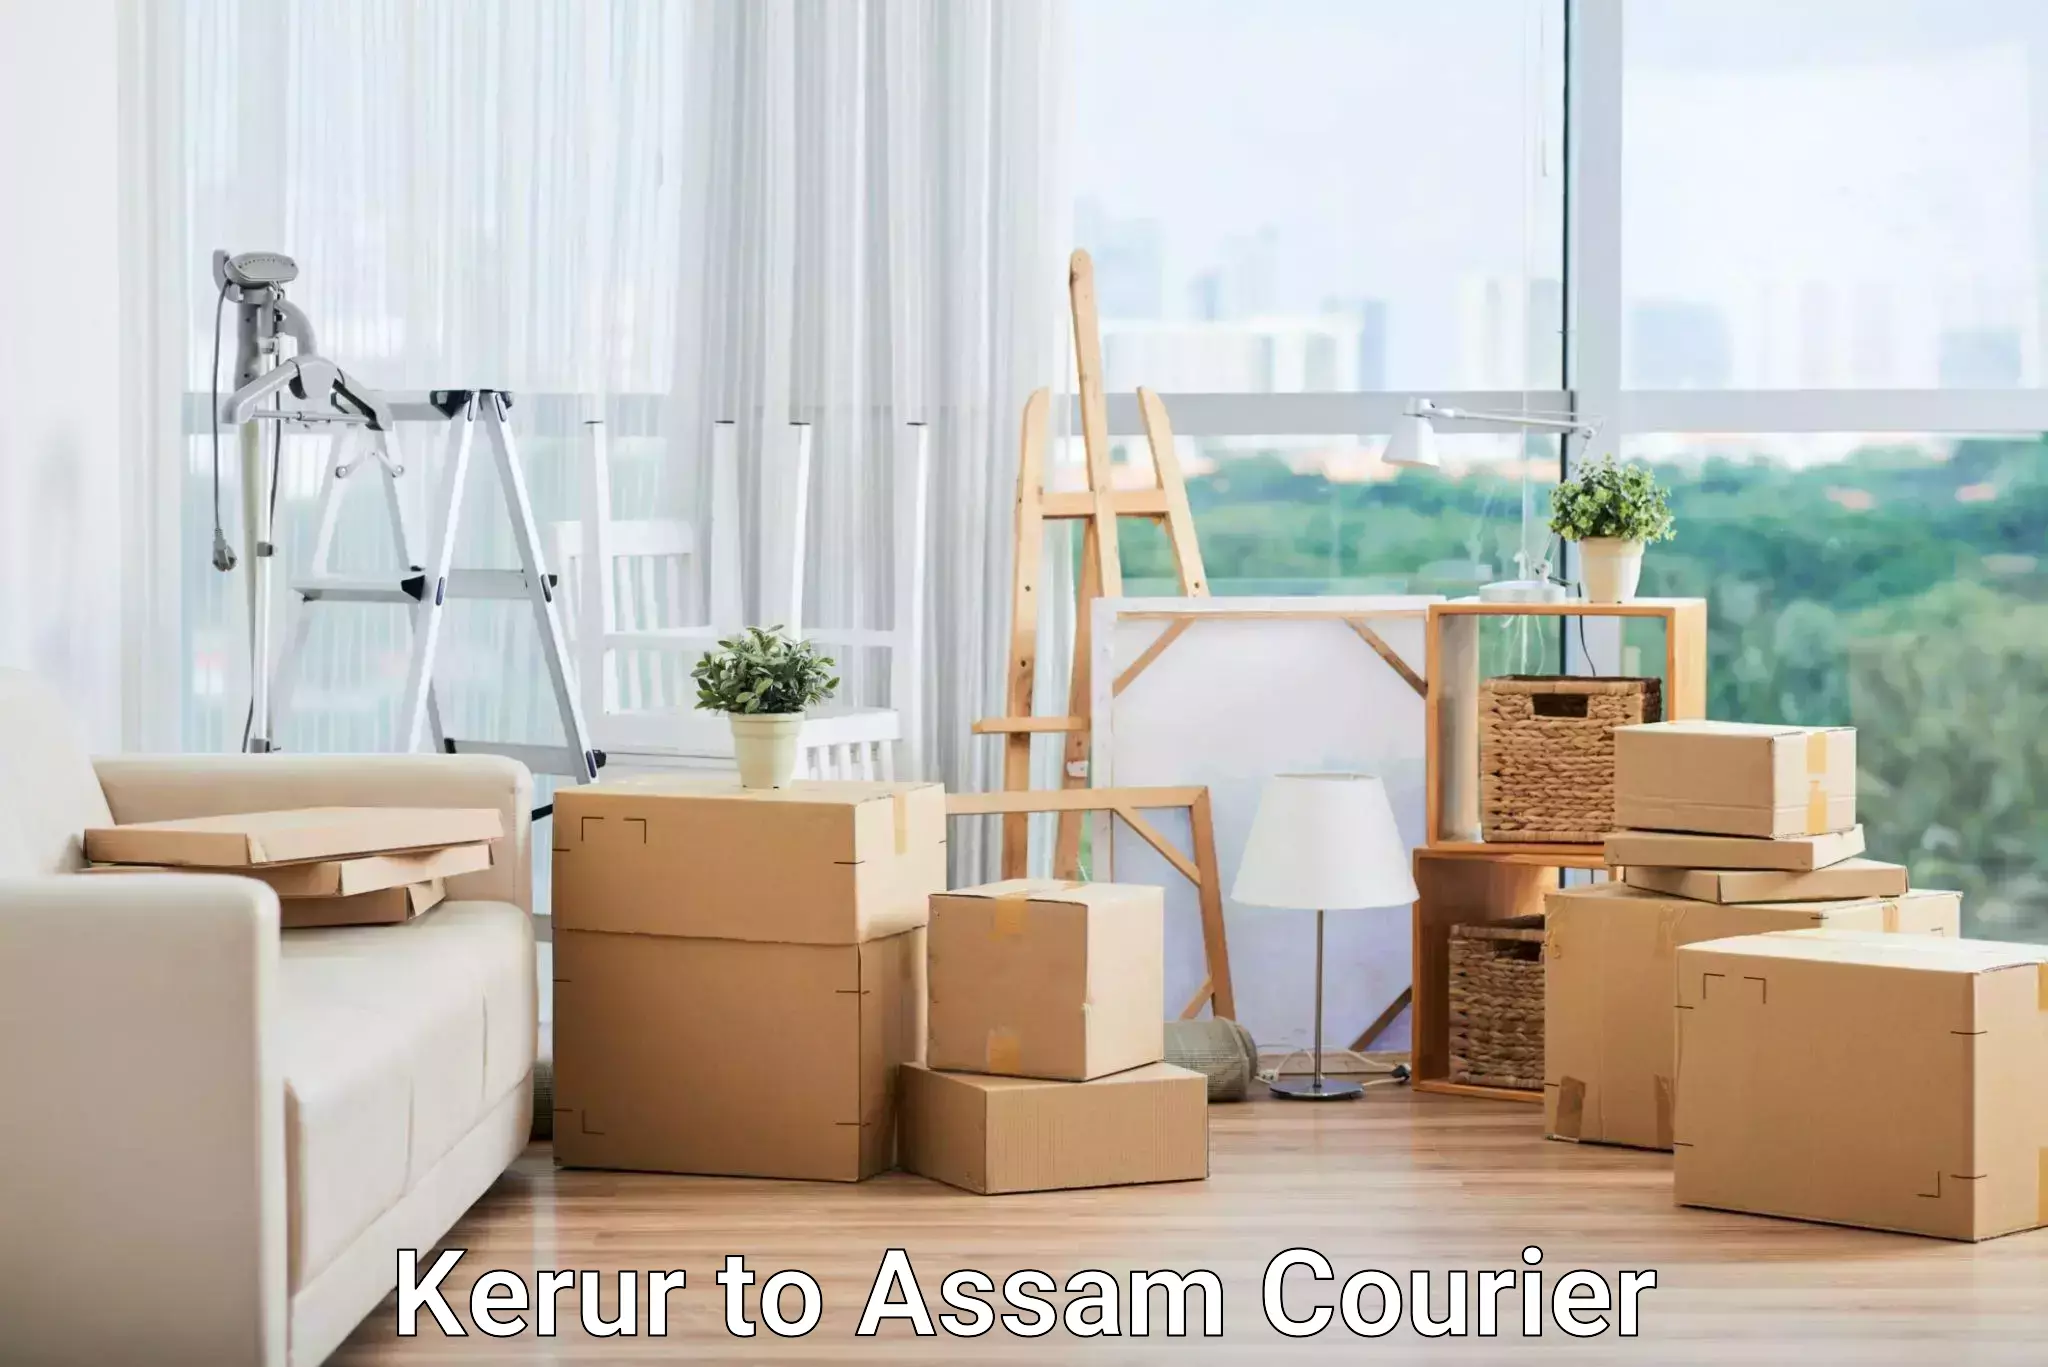 24/7 courier service Kerur to Assam